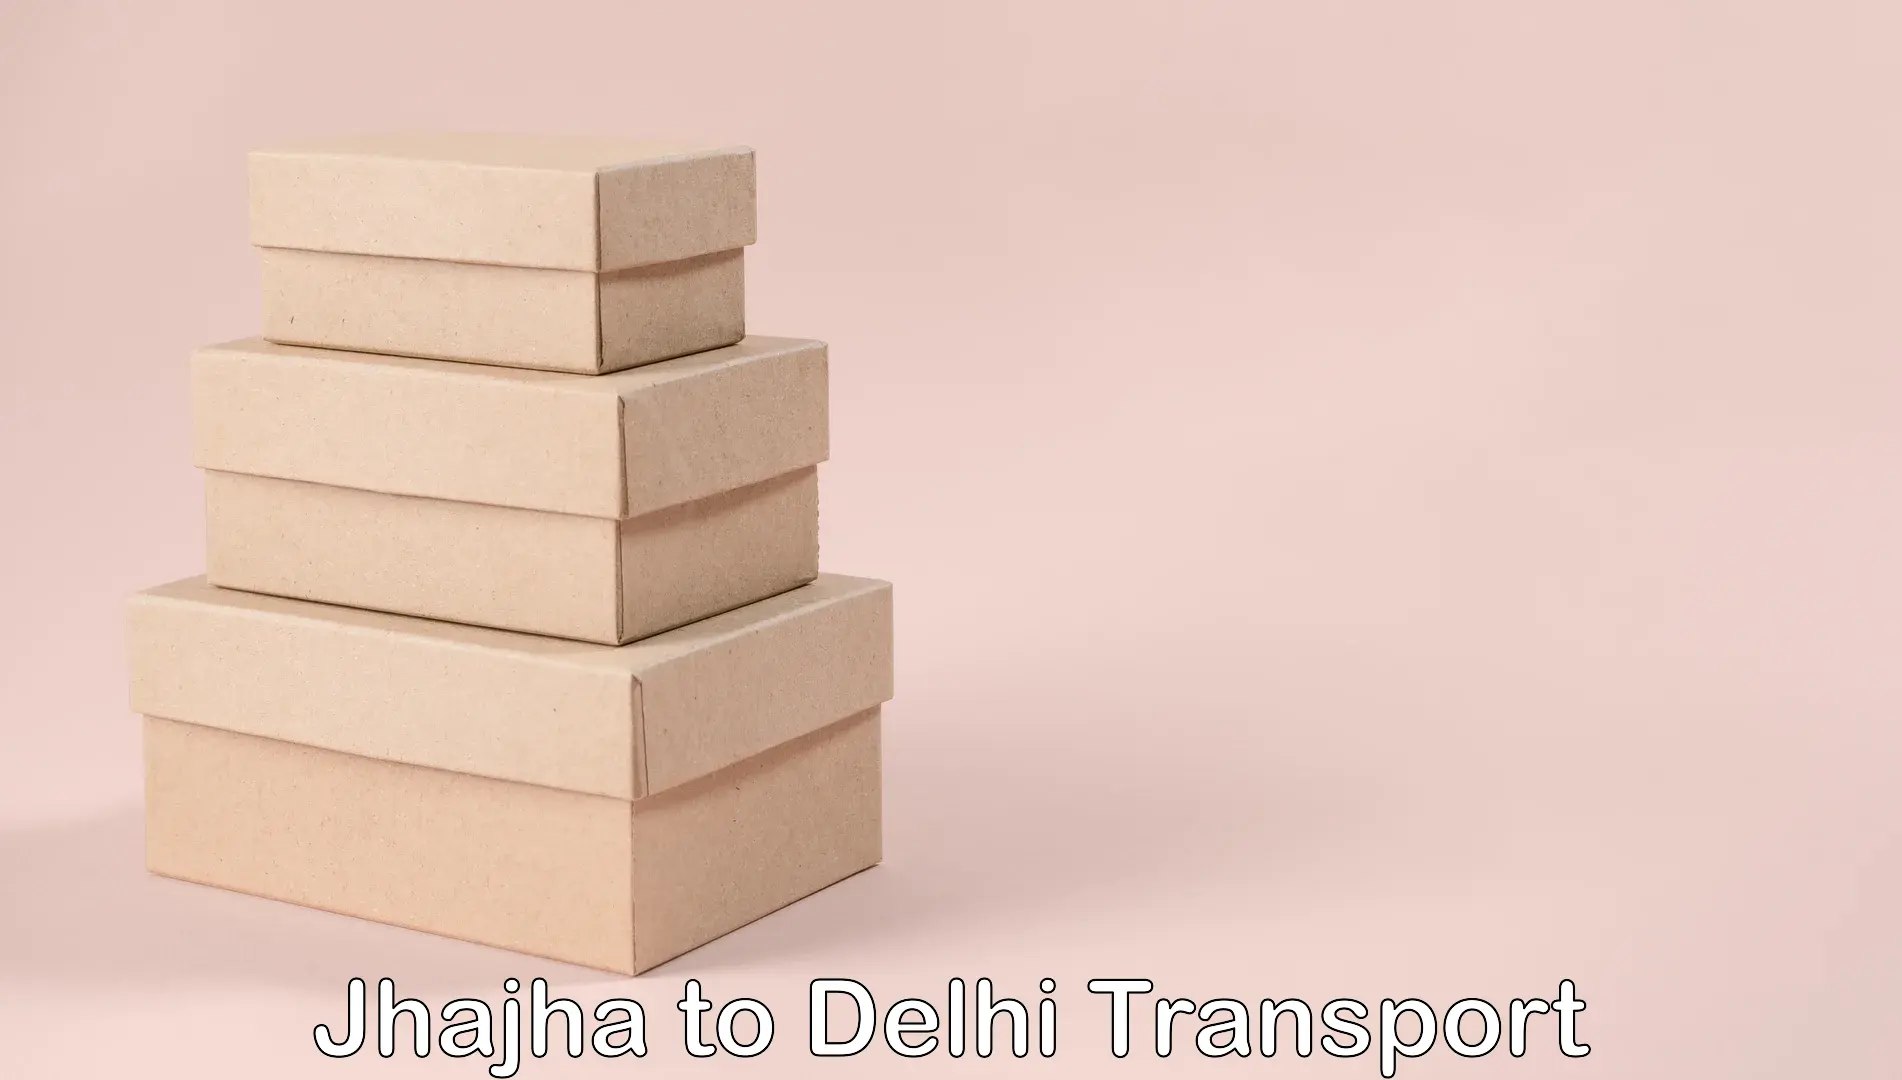 India truck logistics services in Jhajha to Jamia Millia Islamia New Delhi